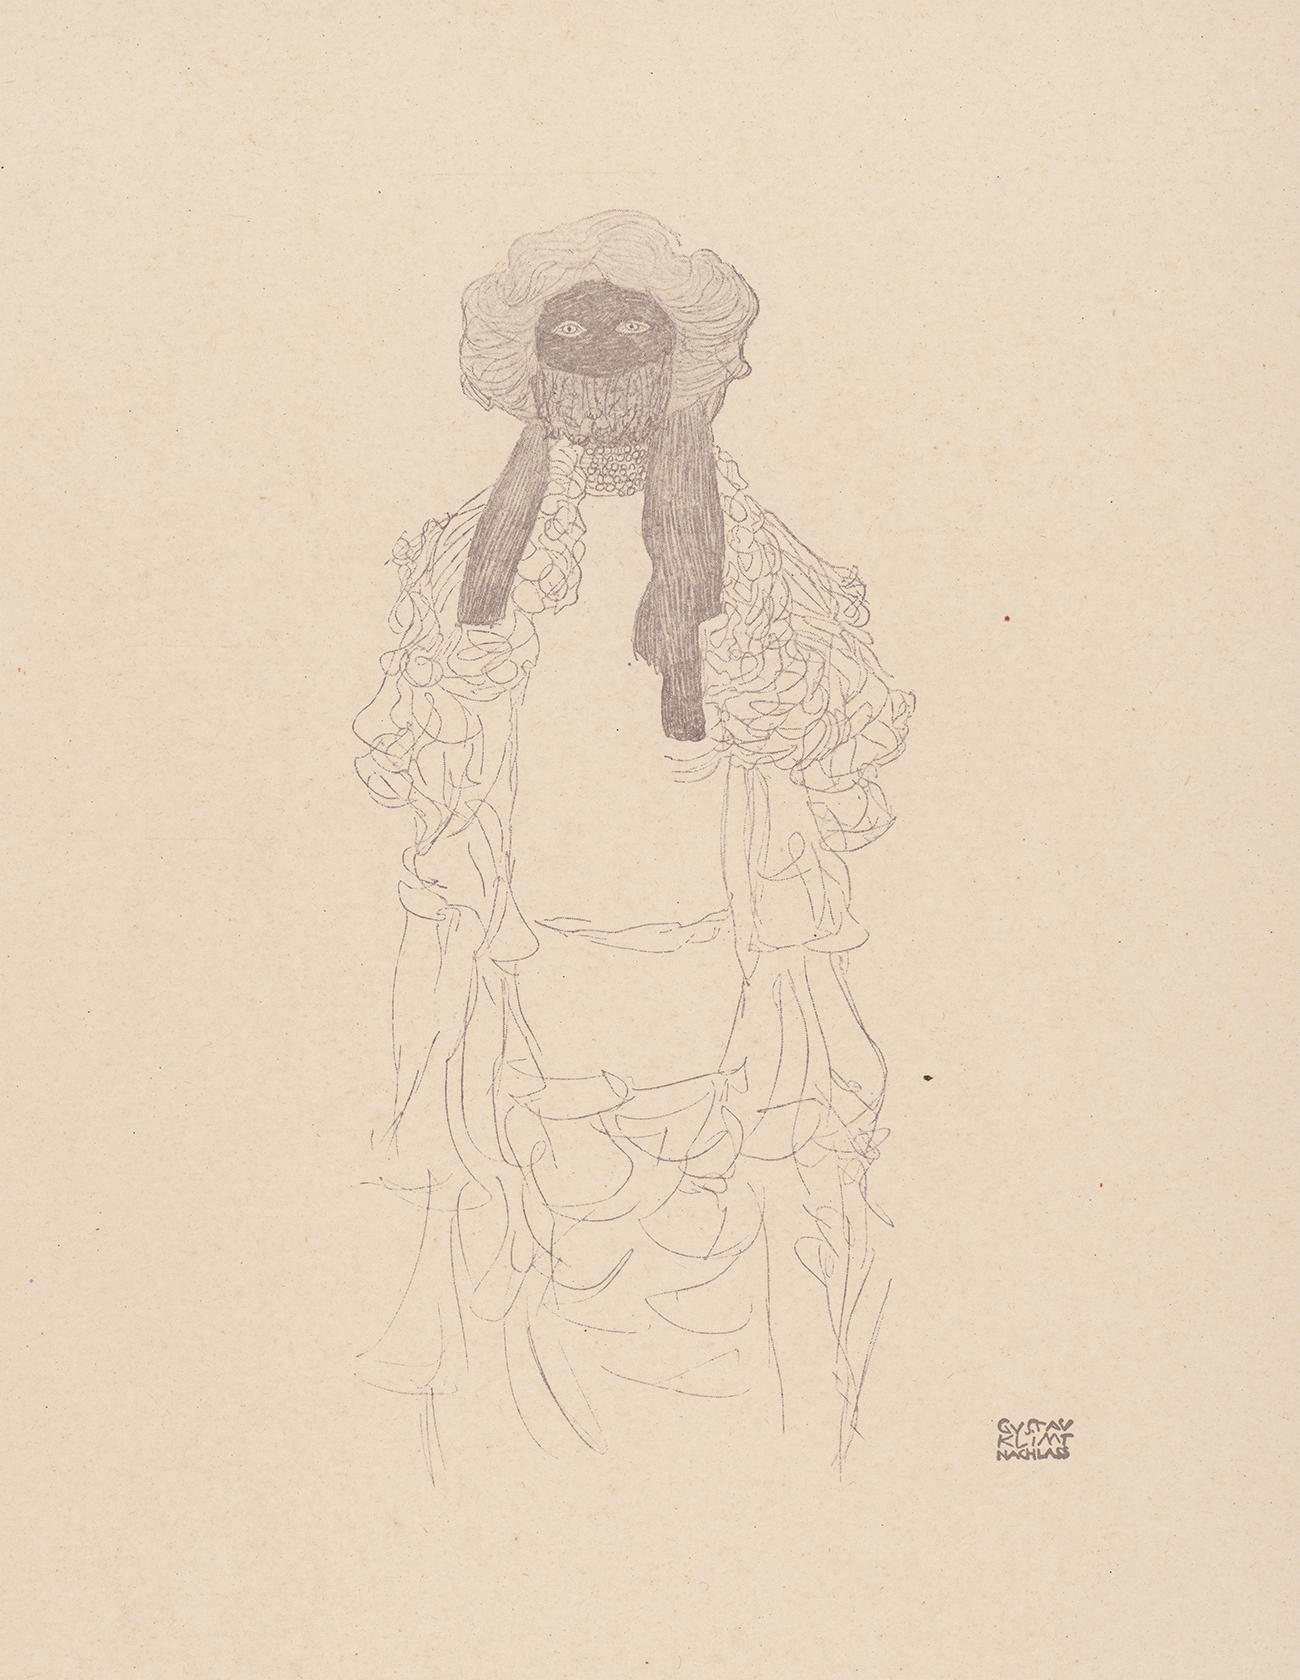 Femme au foulard Gustav Klimt Handzeichnungen (Sketch), Thyrsos Verlag, 1922 - Print de (after) Gustav Klimt